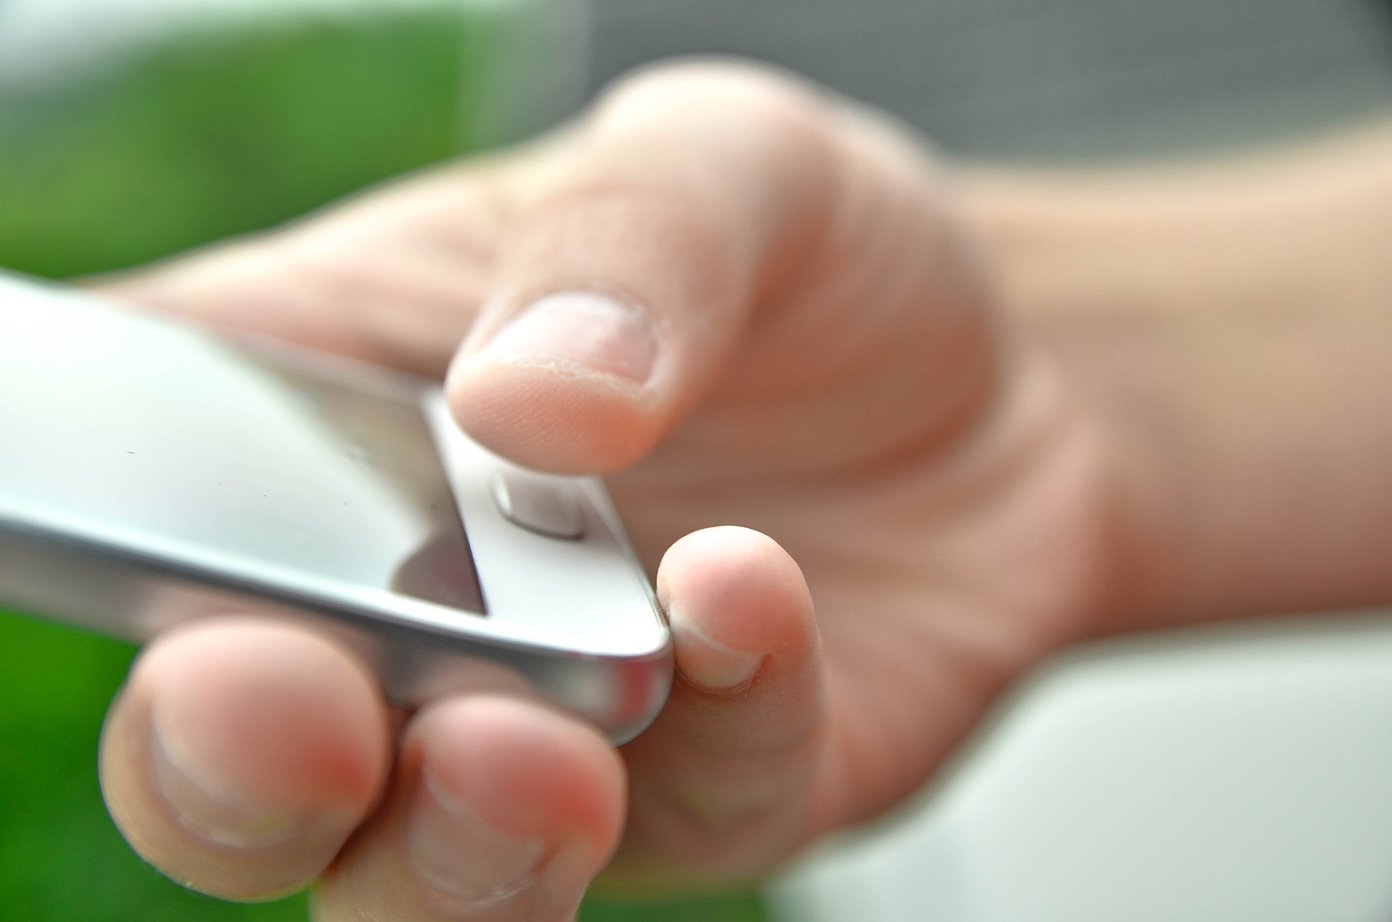 Cómo funcionan los sensores de huellas dactilares en pantalla en teléfonos inteligentes